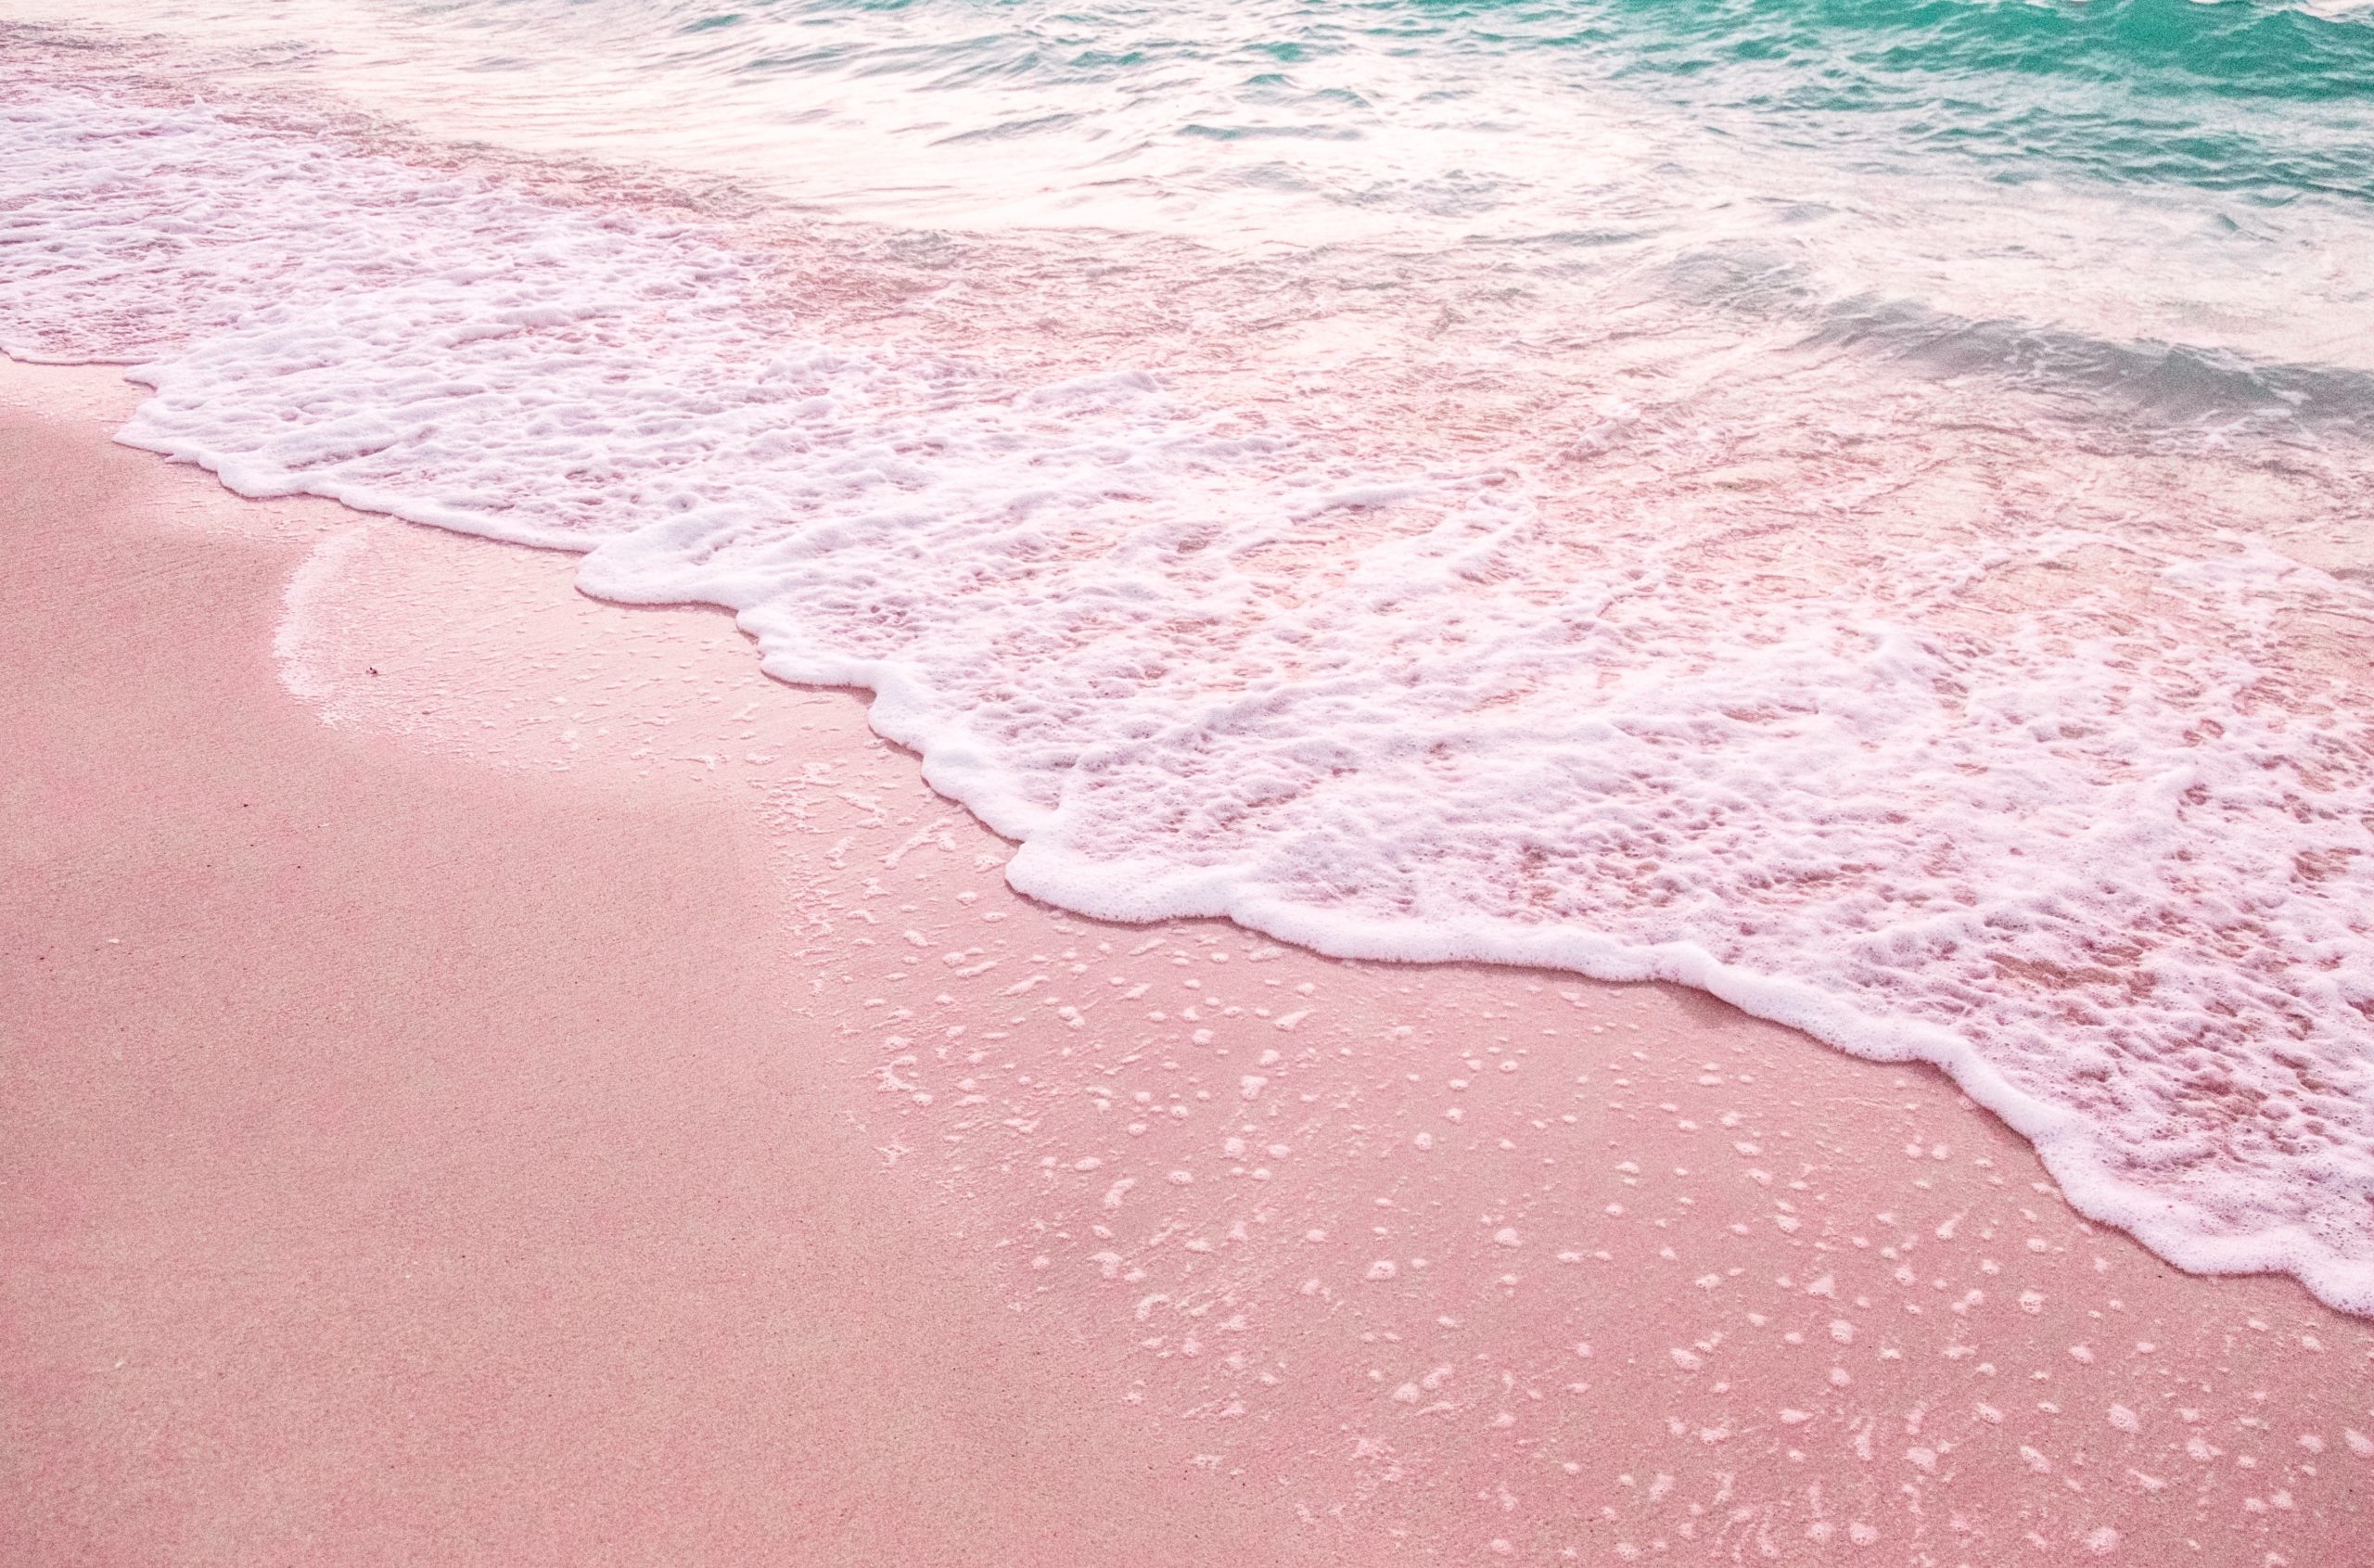 バハマの ピンクサンドビーチ は桃色の砂浜でインスタ映え カリブ海に浮かぶバハマ諸島の奇跡 ナナイログラデーション Nanairo Gradation